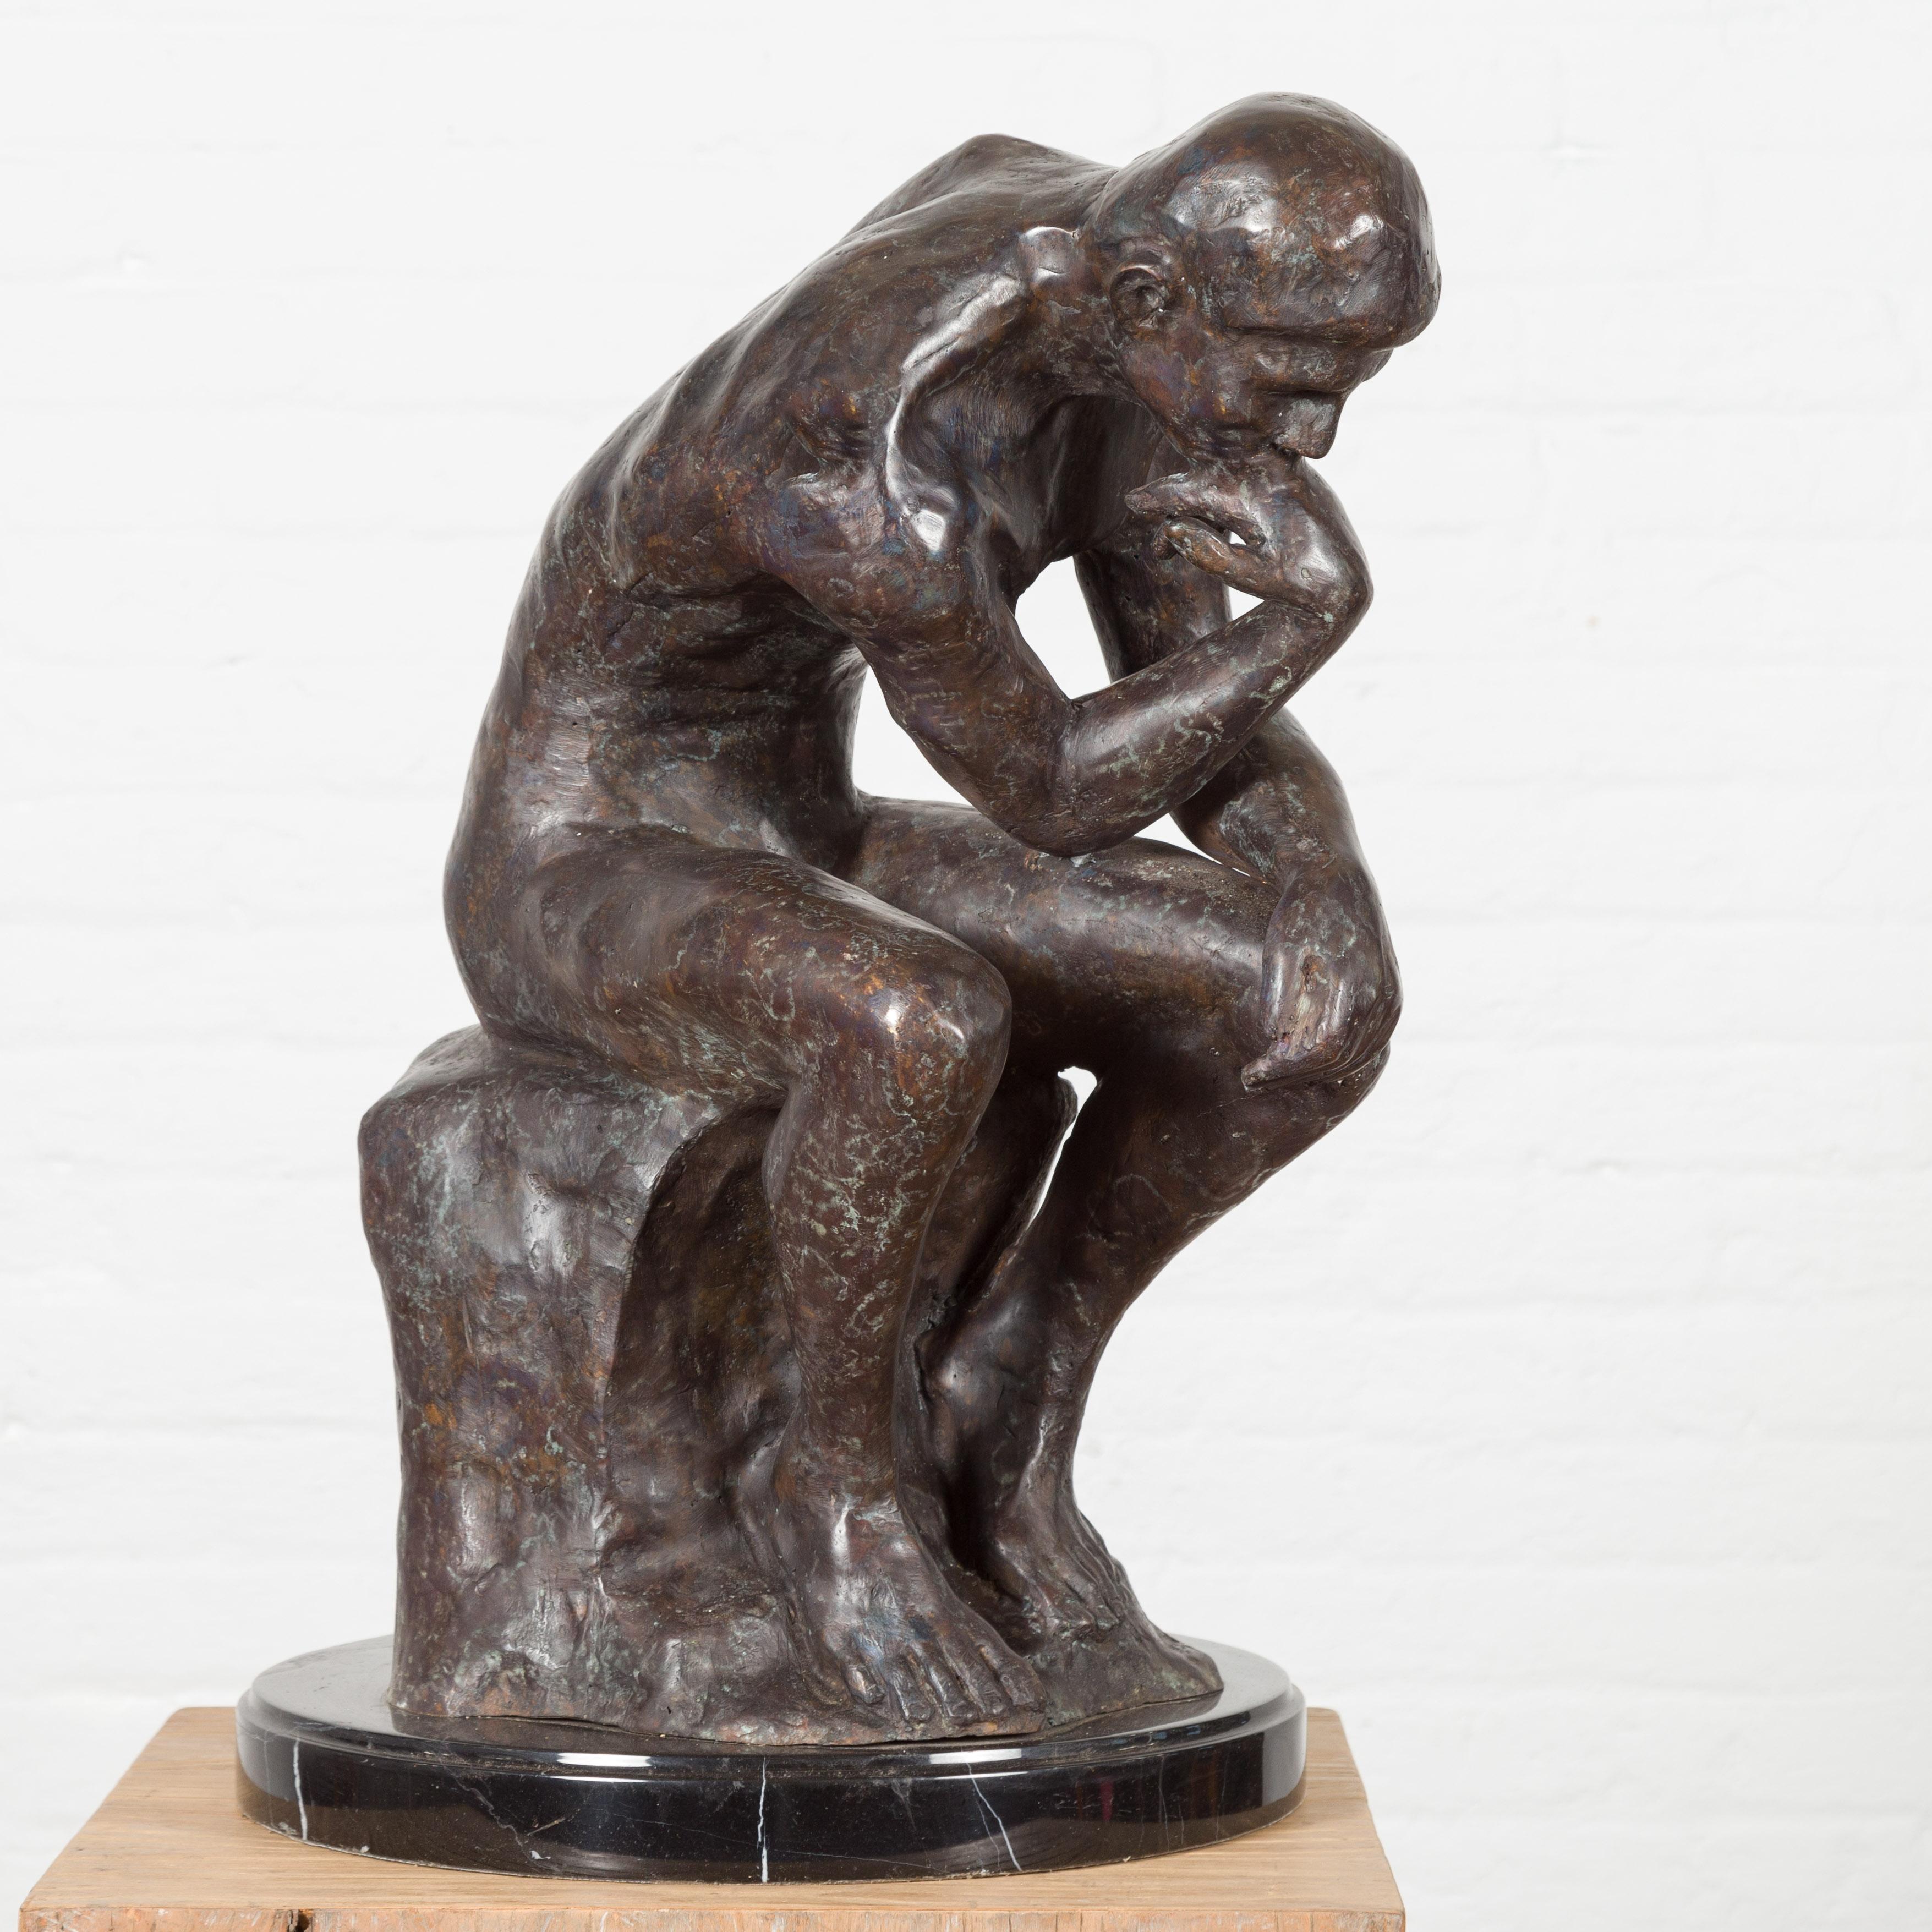 Eine Skulptur aus Bronze im Wachsausschmelzverfahren, inspiriert von Auguste Rodins Der Denker, in dunkler Patina auf schwarzem Marmorsockel. Dieser Artikel ist ab sofort erhältlich und es handelt sich ebenfalls um eine aktuelle Produktion. Diese